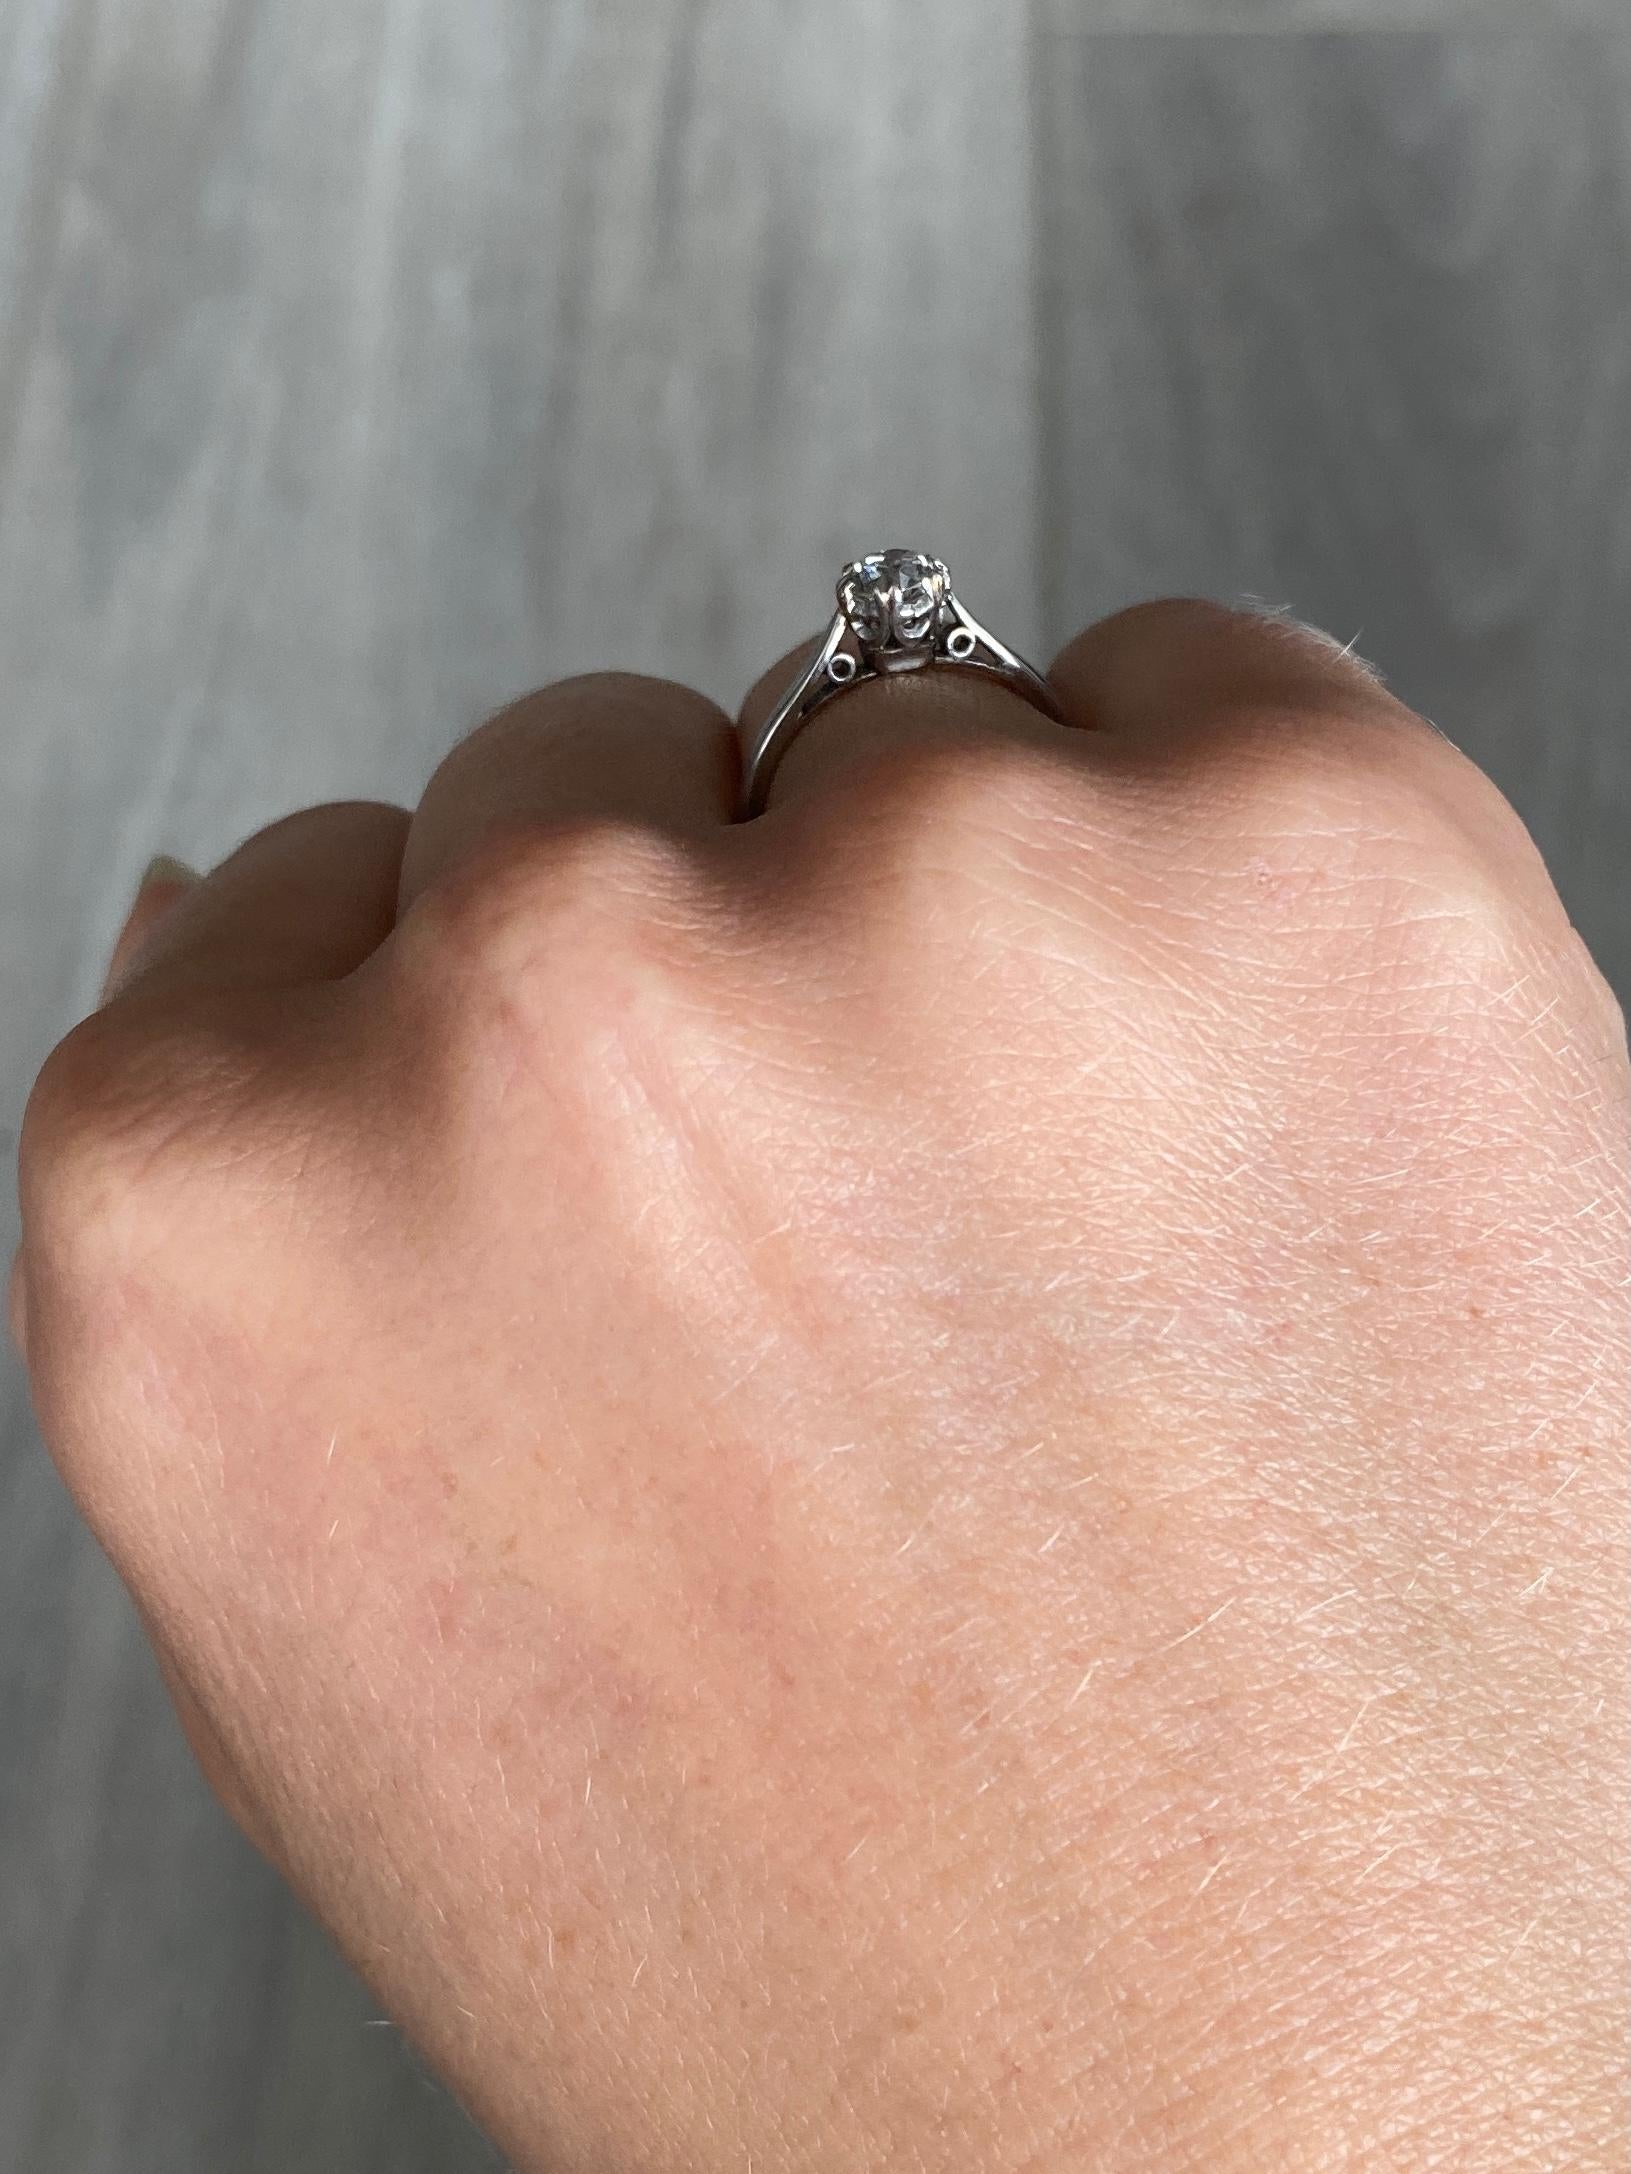 Der Diamant in diesem Ring misst 50 pts. Der Stein hat einen wunderbaren Glanz. Der Ring ist aus Platin modelliert. 

Ring Größe: L oder 5 3/4
Höhe ohne Finger: 5,5 mm

Gewicht: 2.1g